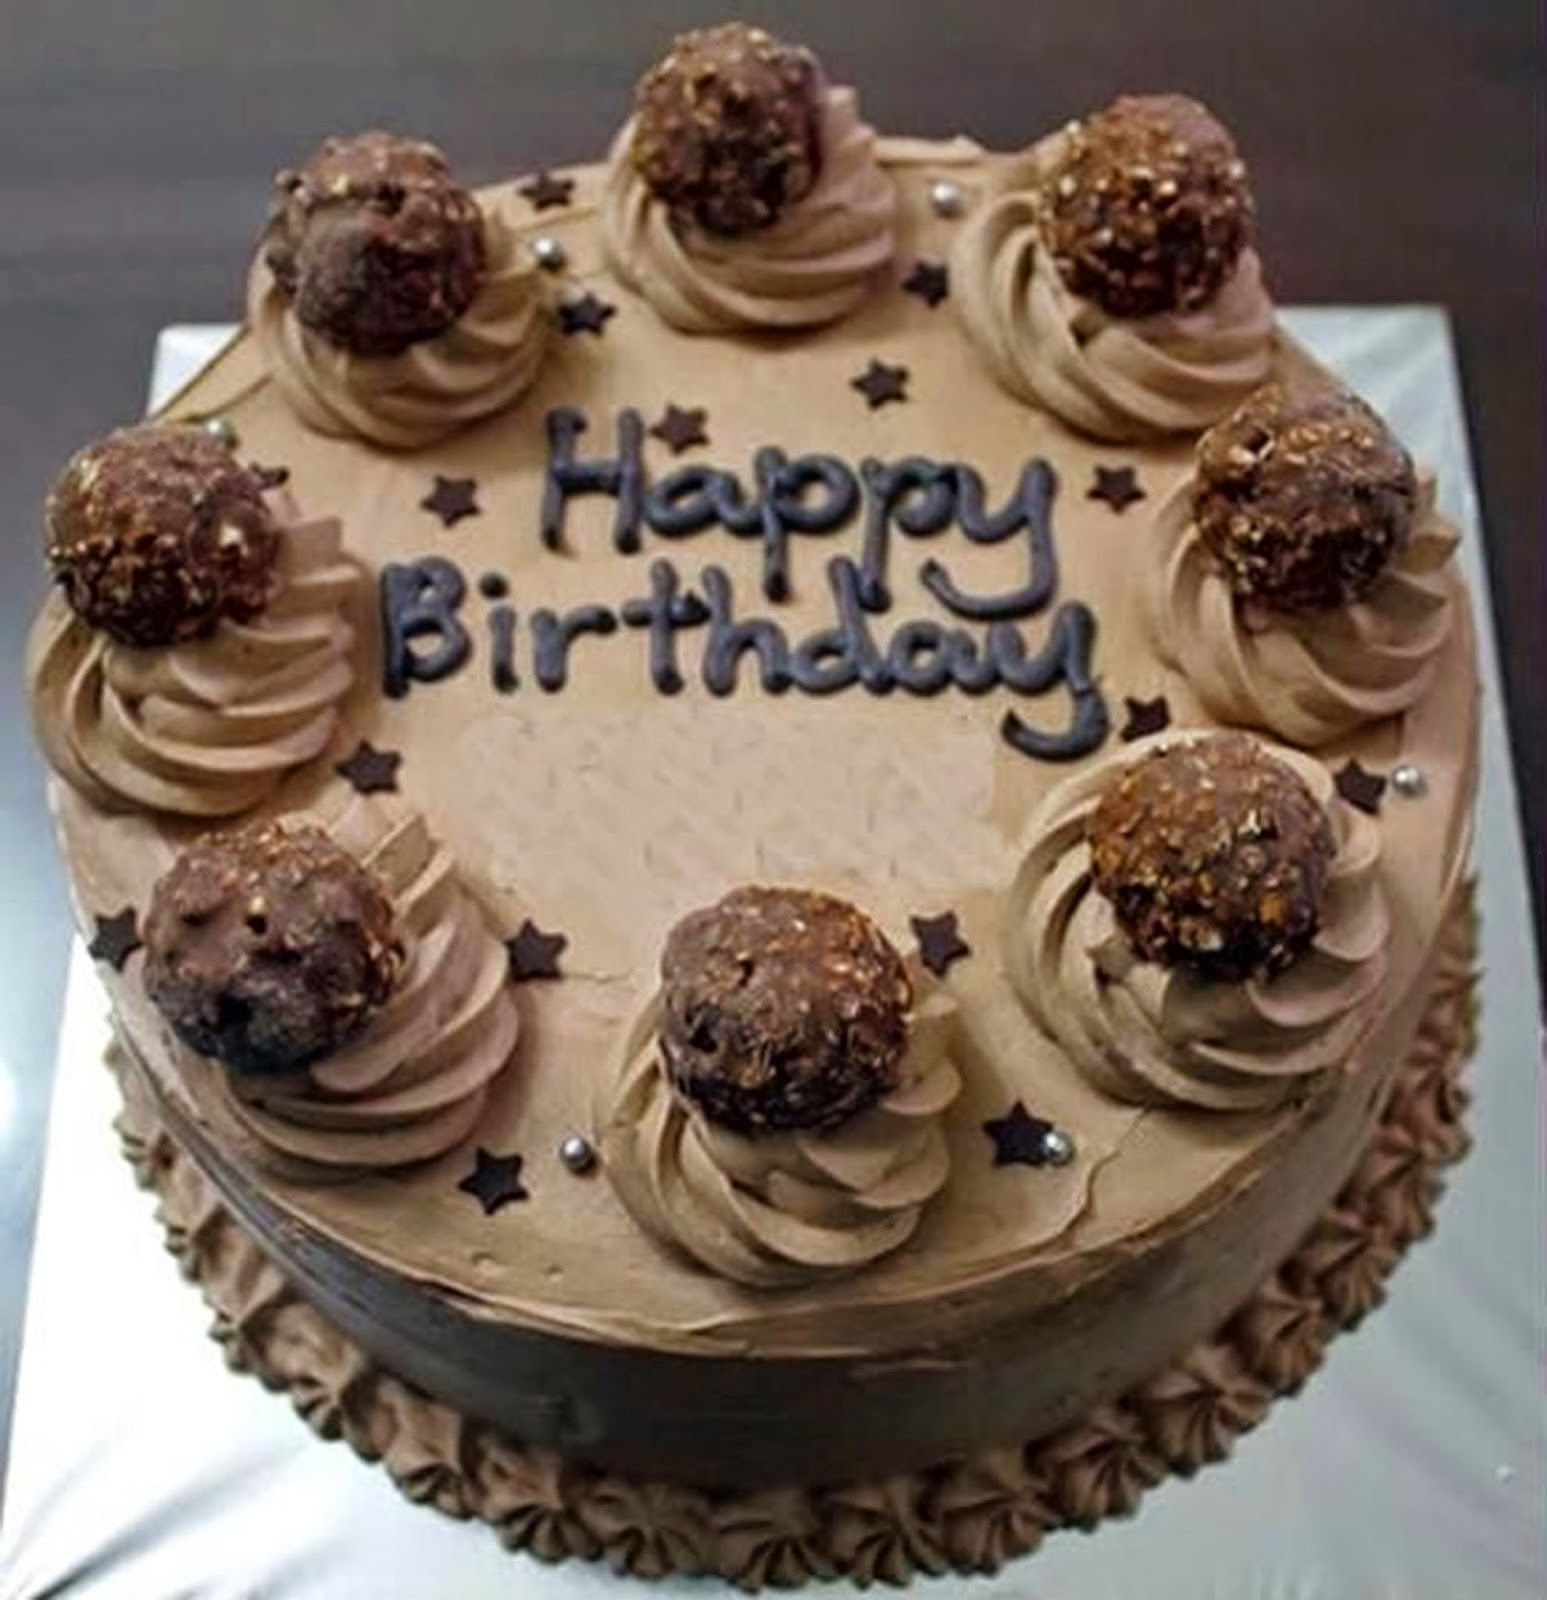 Happy Birthday Chocolate Cake Best Of Happy Birthday Chocolate Cake Hafacs